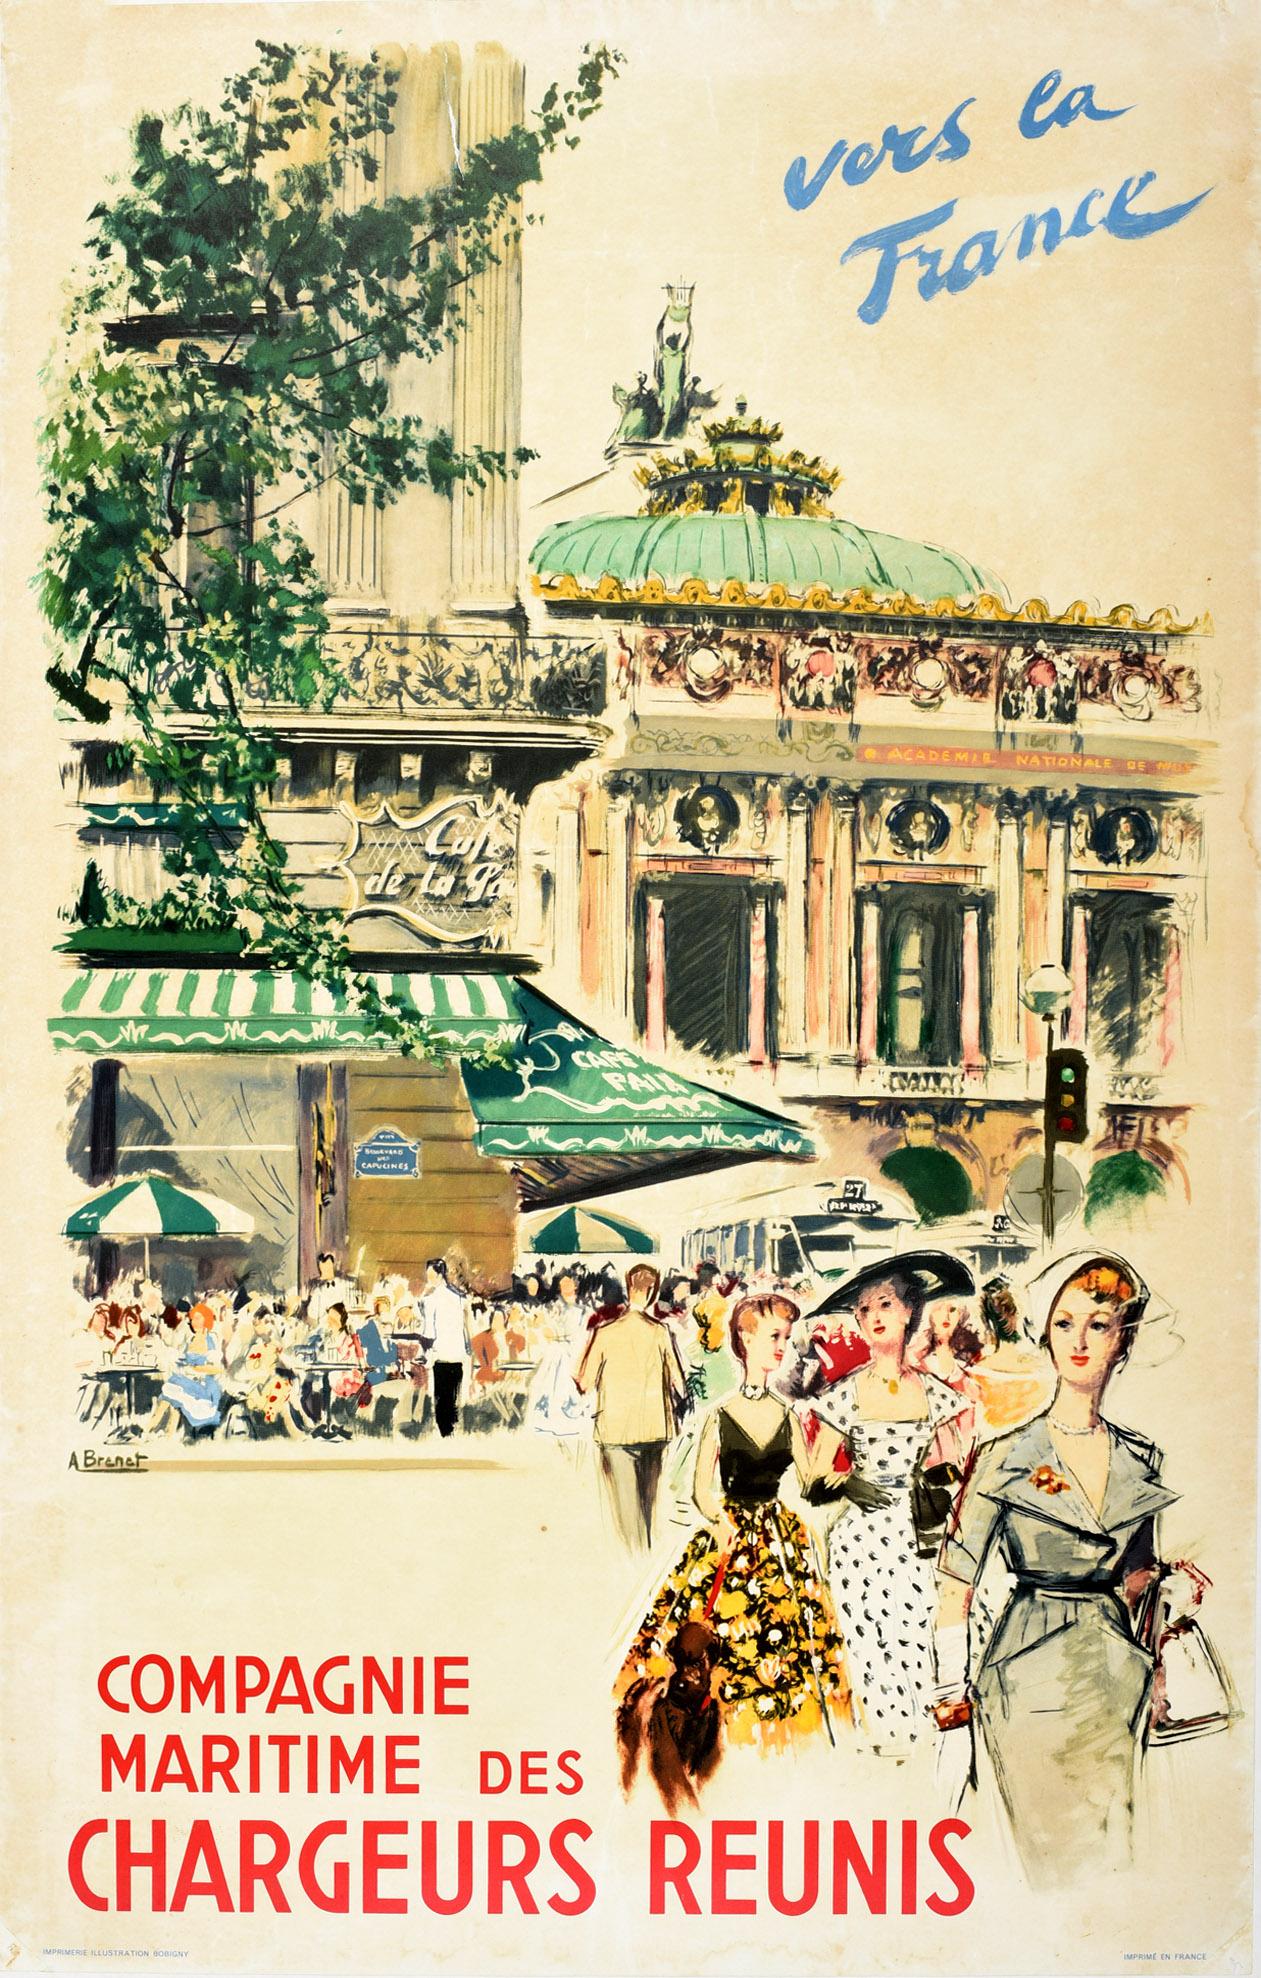 Albert Brenet Print - Original Vintage Poster Chargeurs Reunis Cruise Travel Paris Opera Cafe Fashion